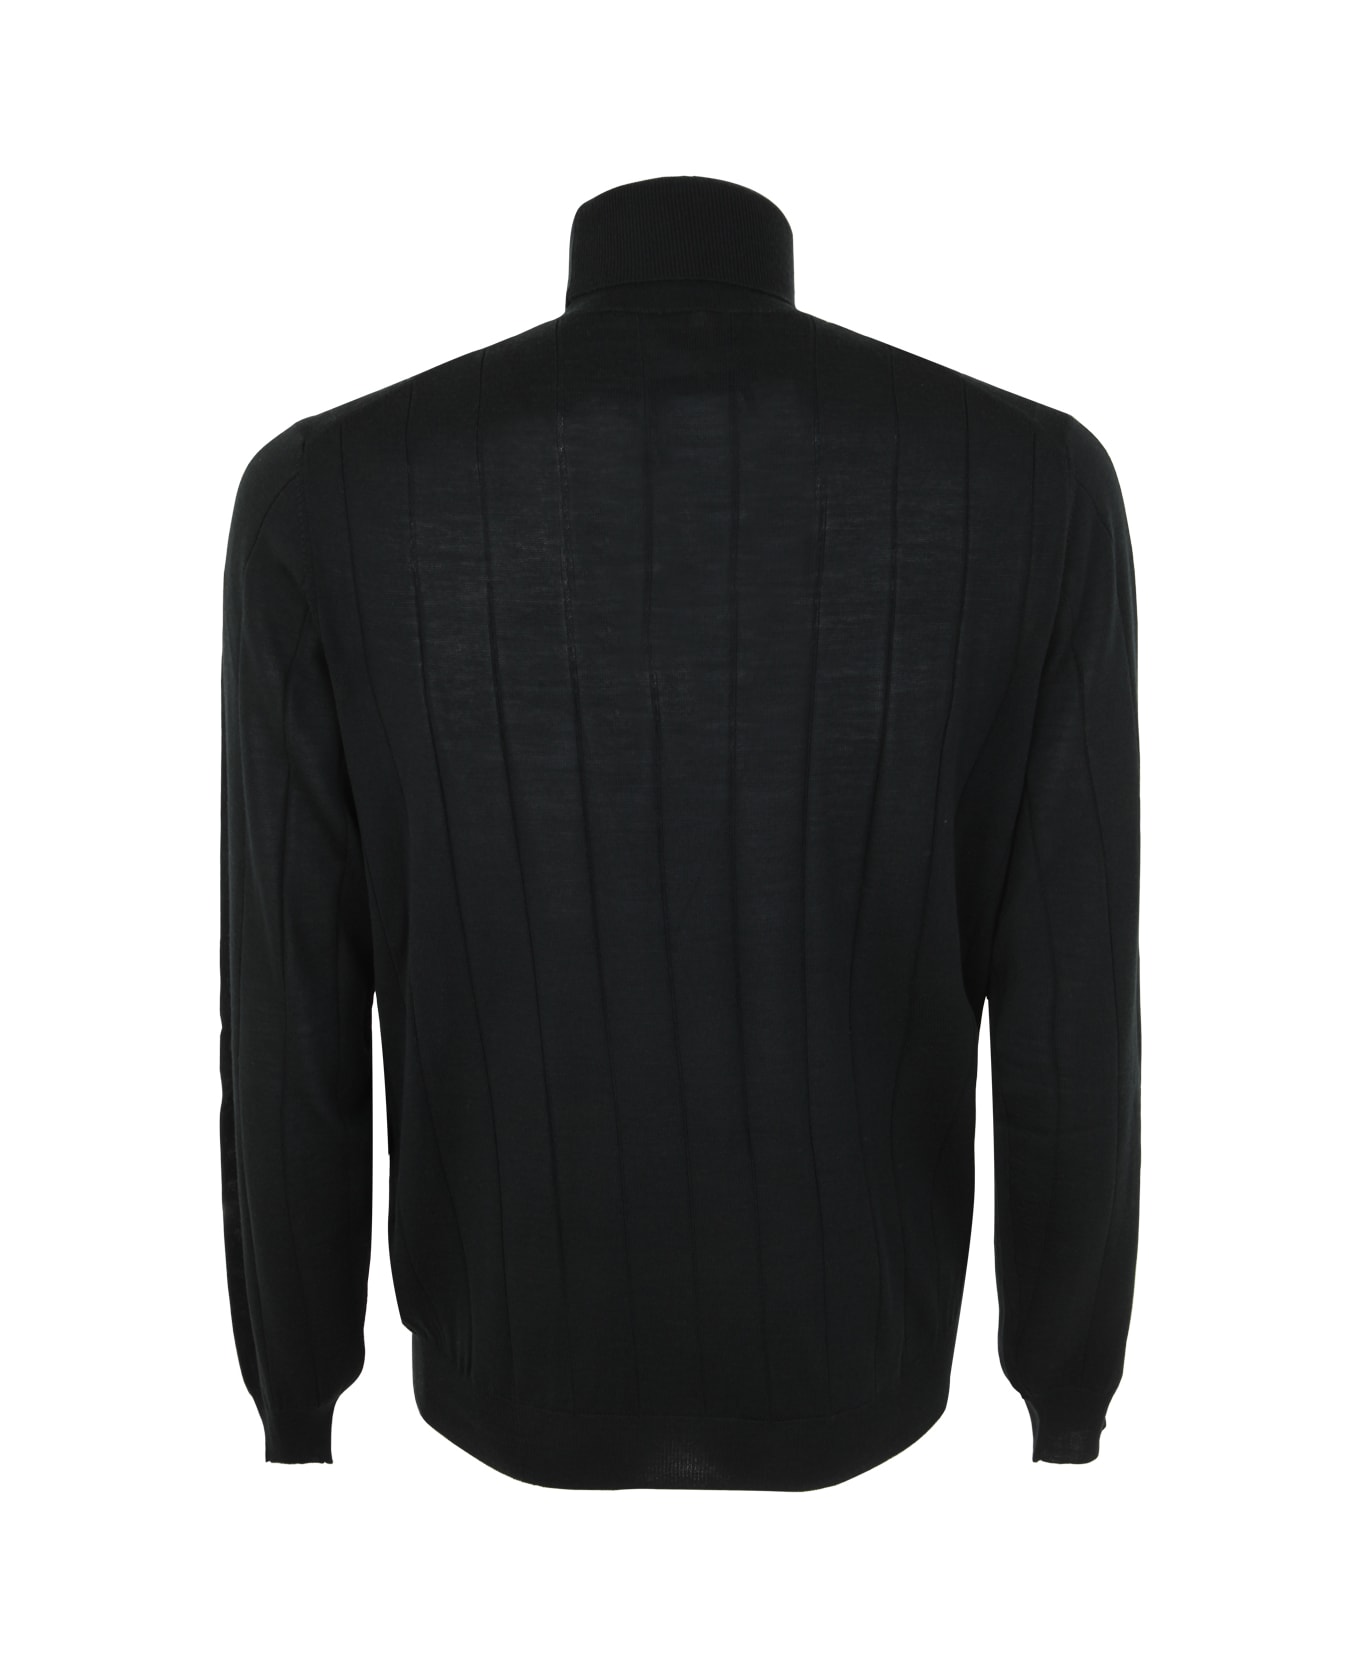 Filippo De Laurentiis Royal Merino Long Sleeves Turtle Neck Sweater - Green ニットウェア